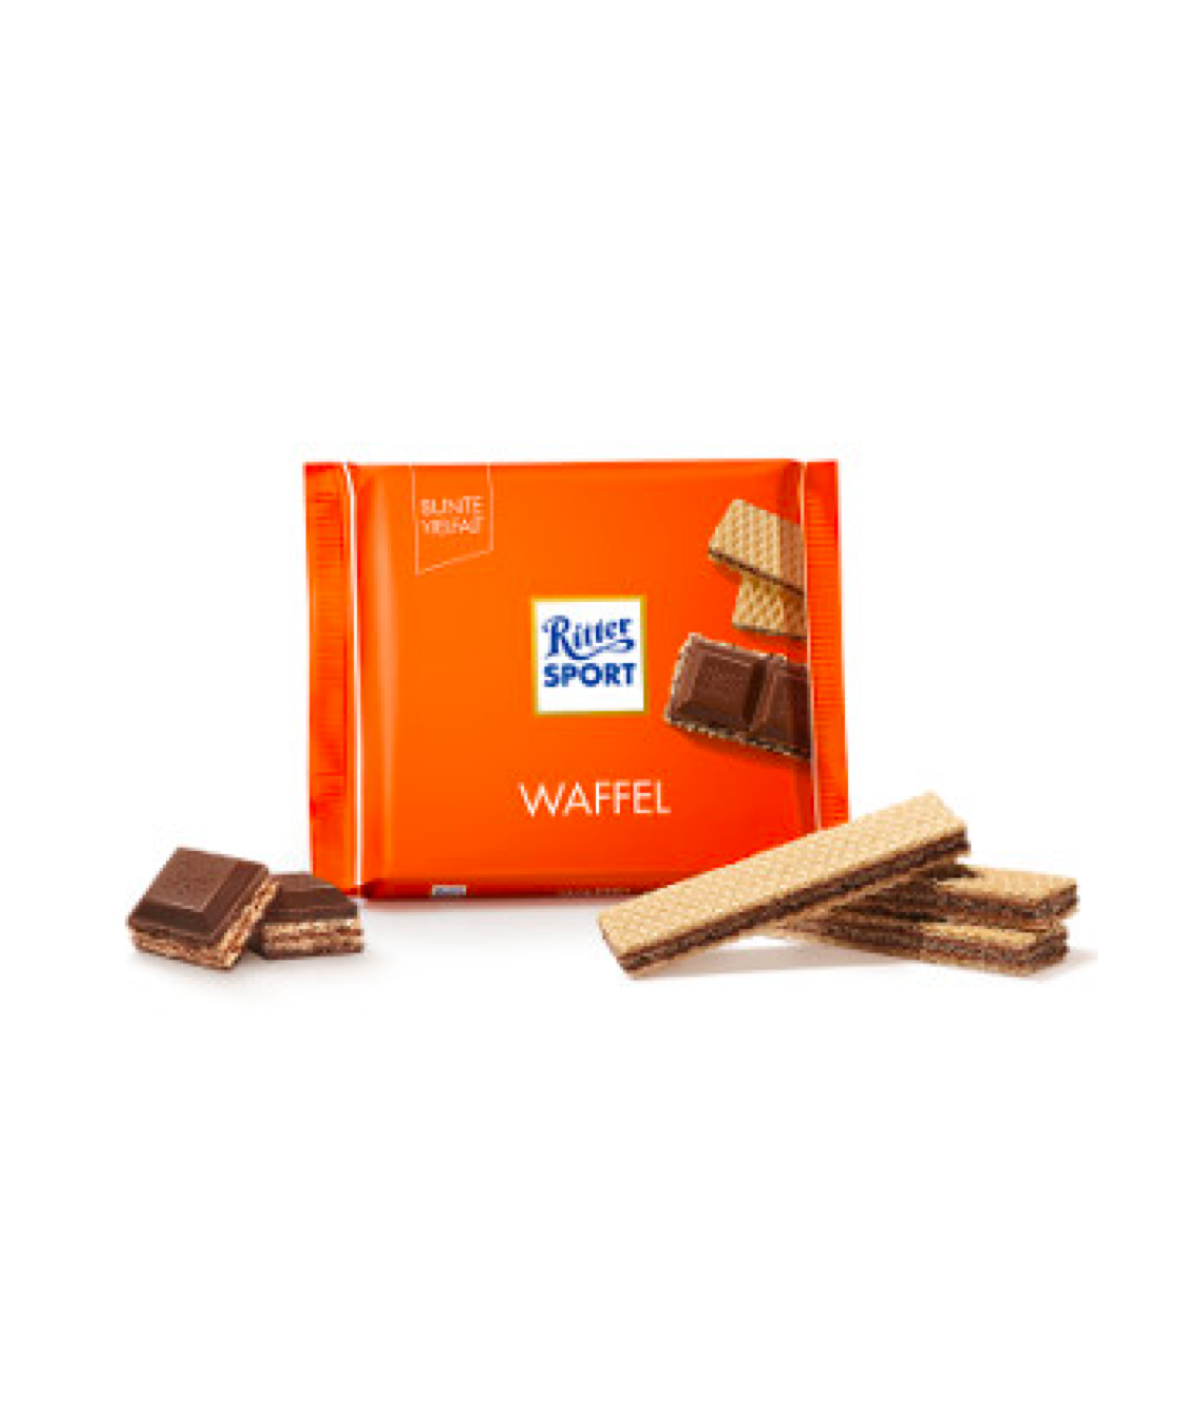 Coffret chocolat, comment innover avec un packaging original.